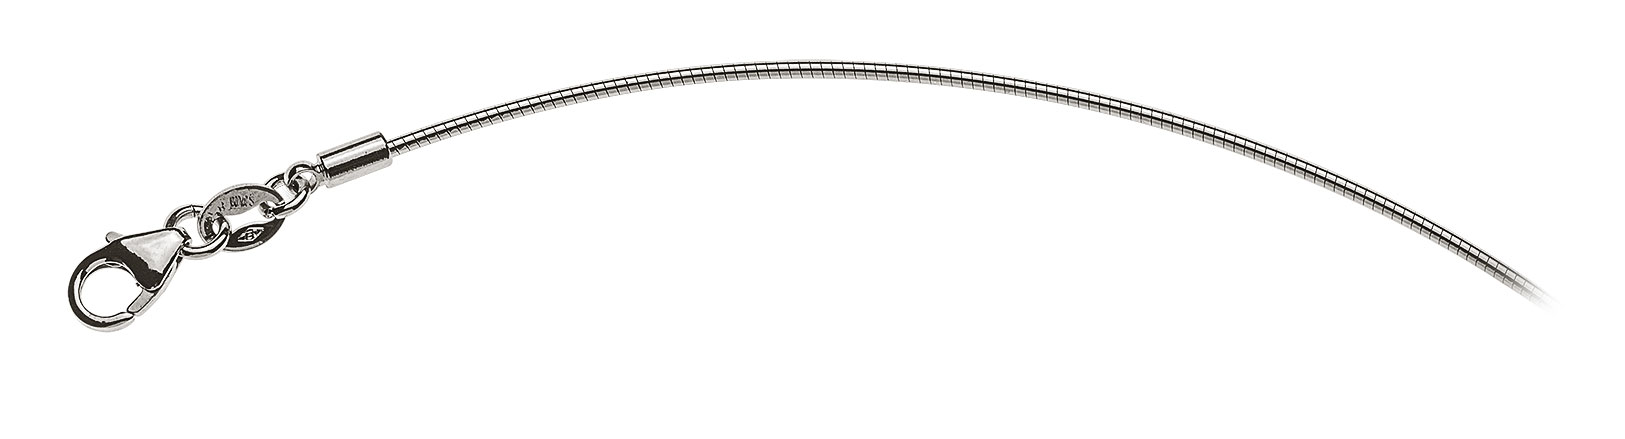 AURONOS Prestige Halskette Weissgold 18K Omegakette 40cm 1.0mm